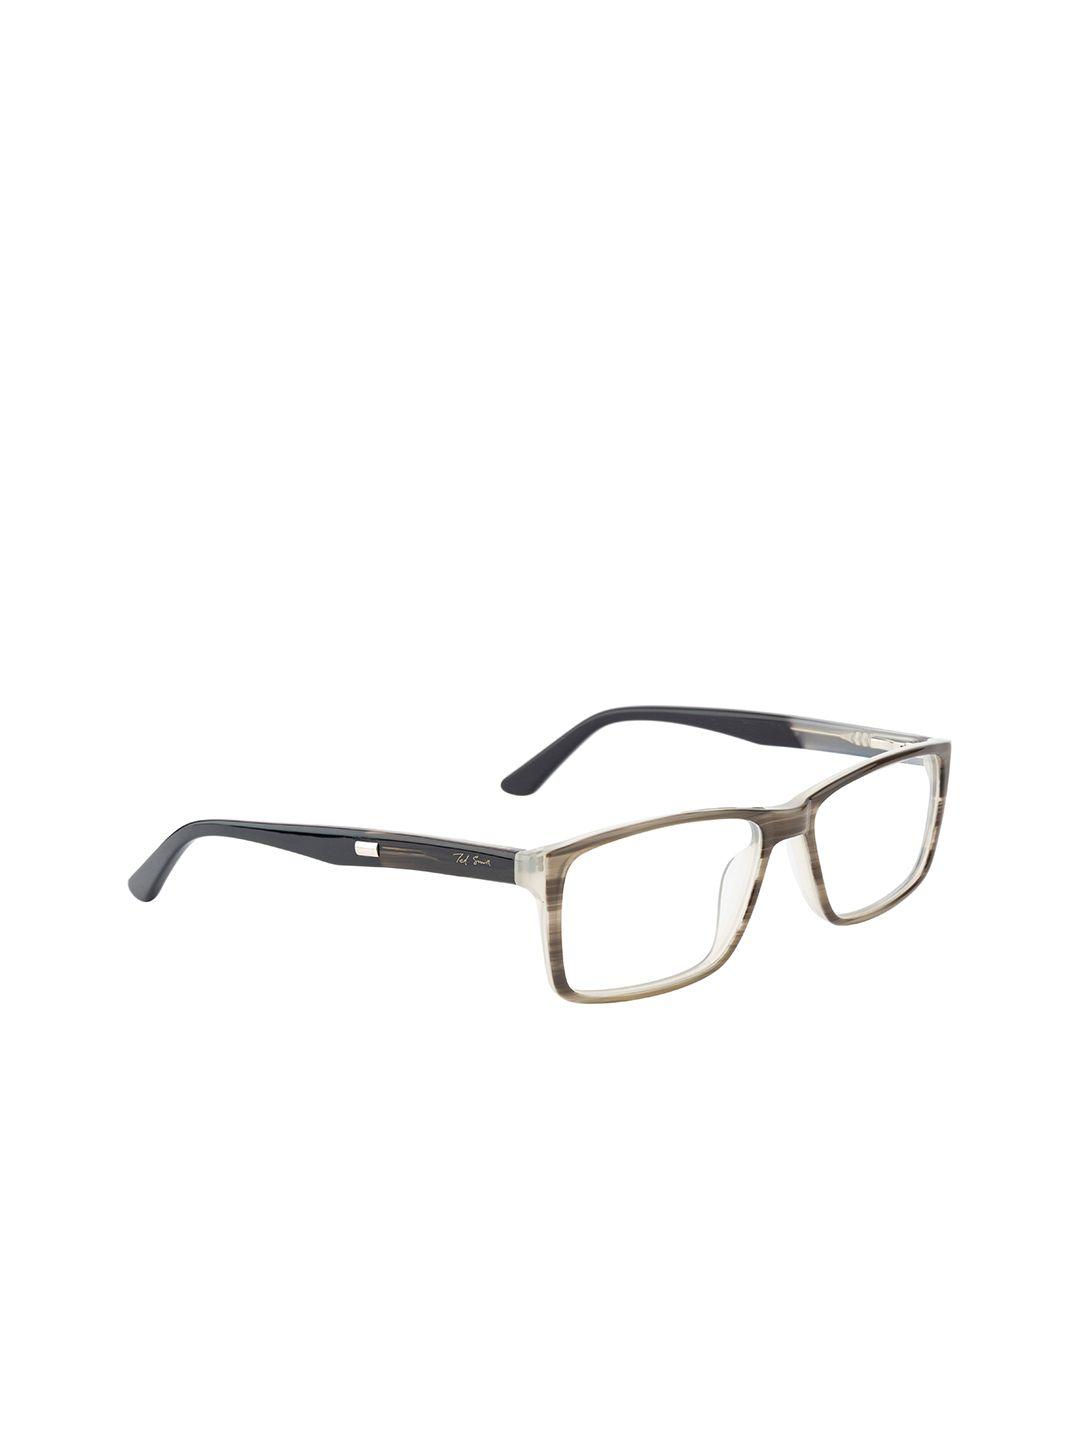 ted smith unisex black & beige colourblocked full rim rectangle frames eyeglasses